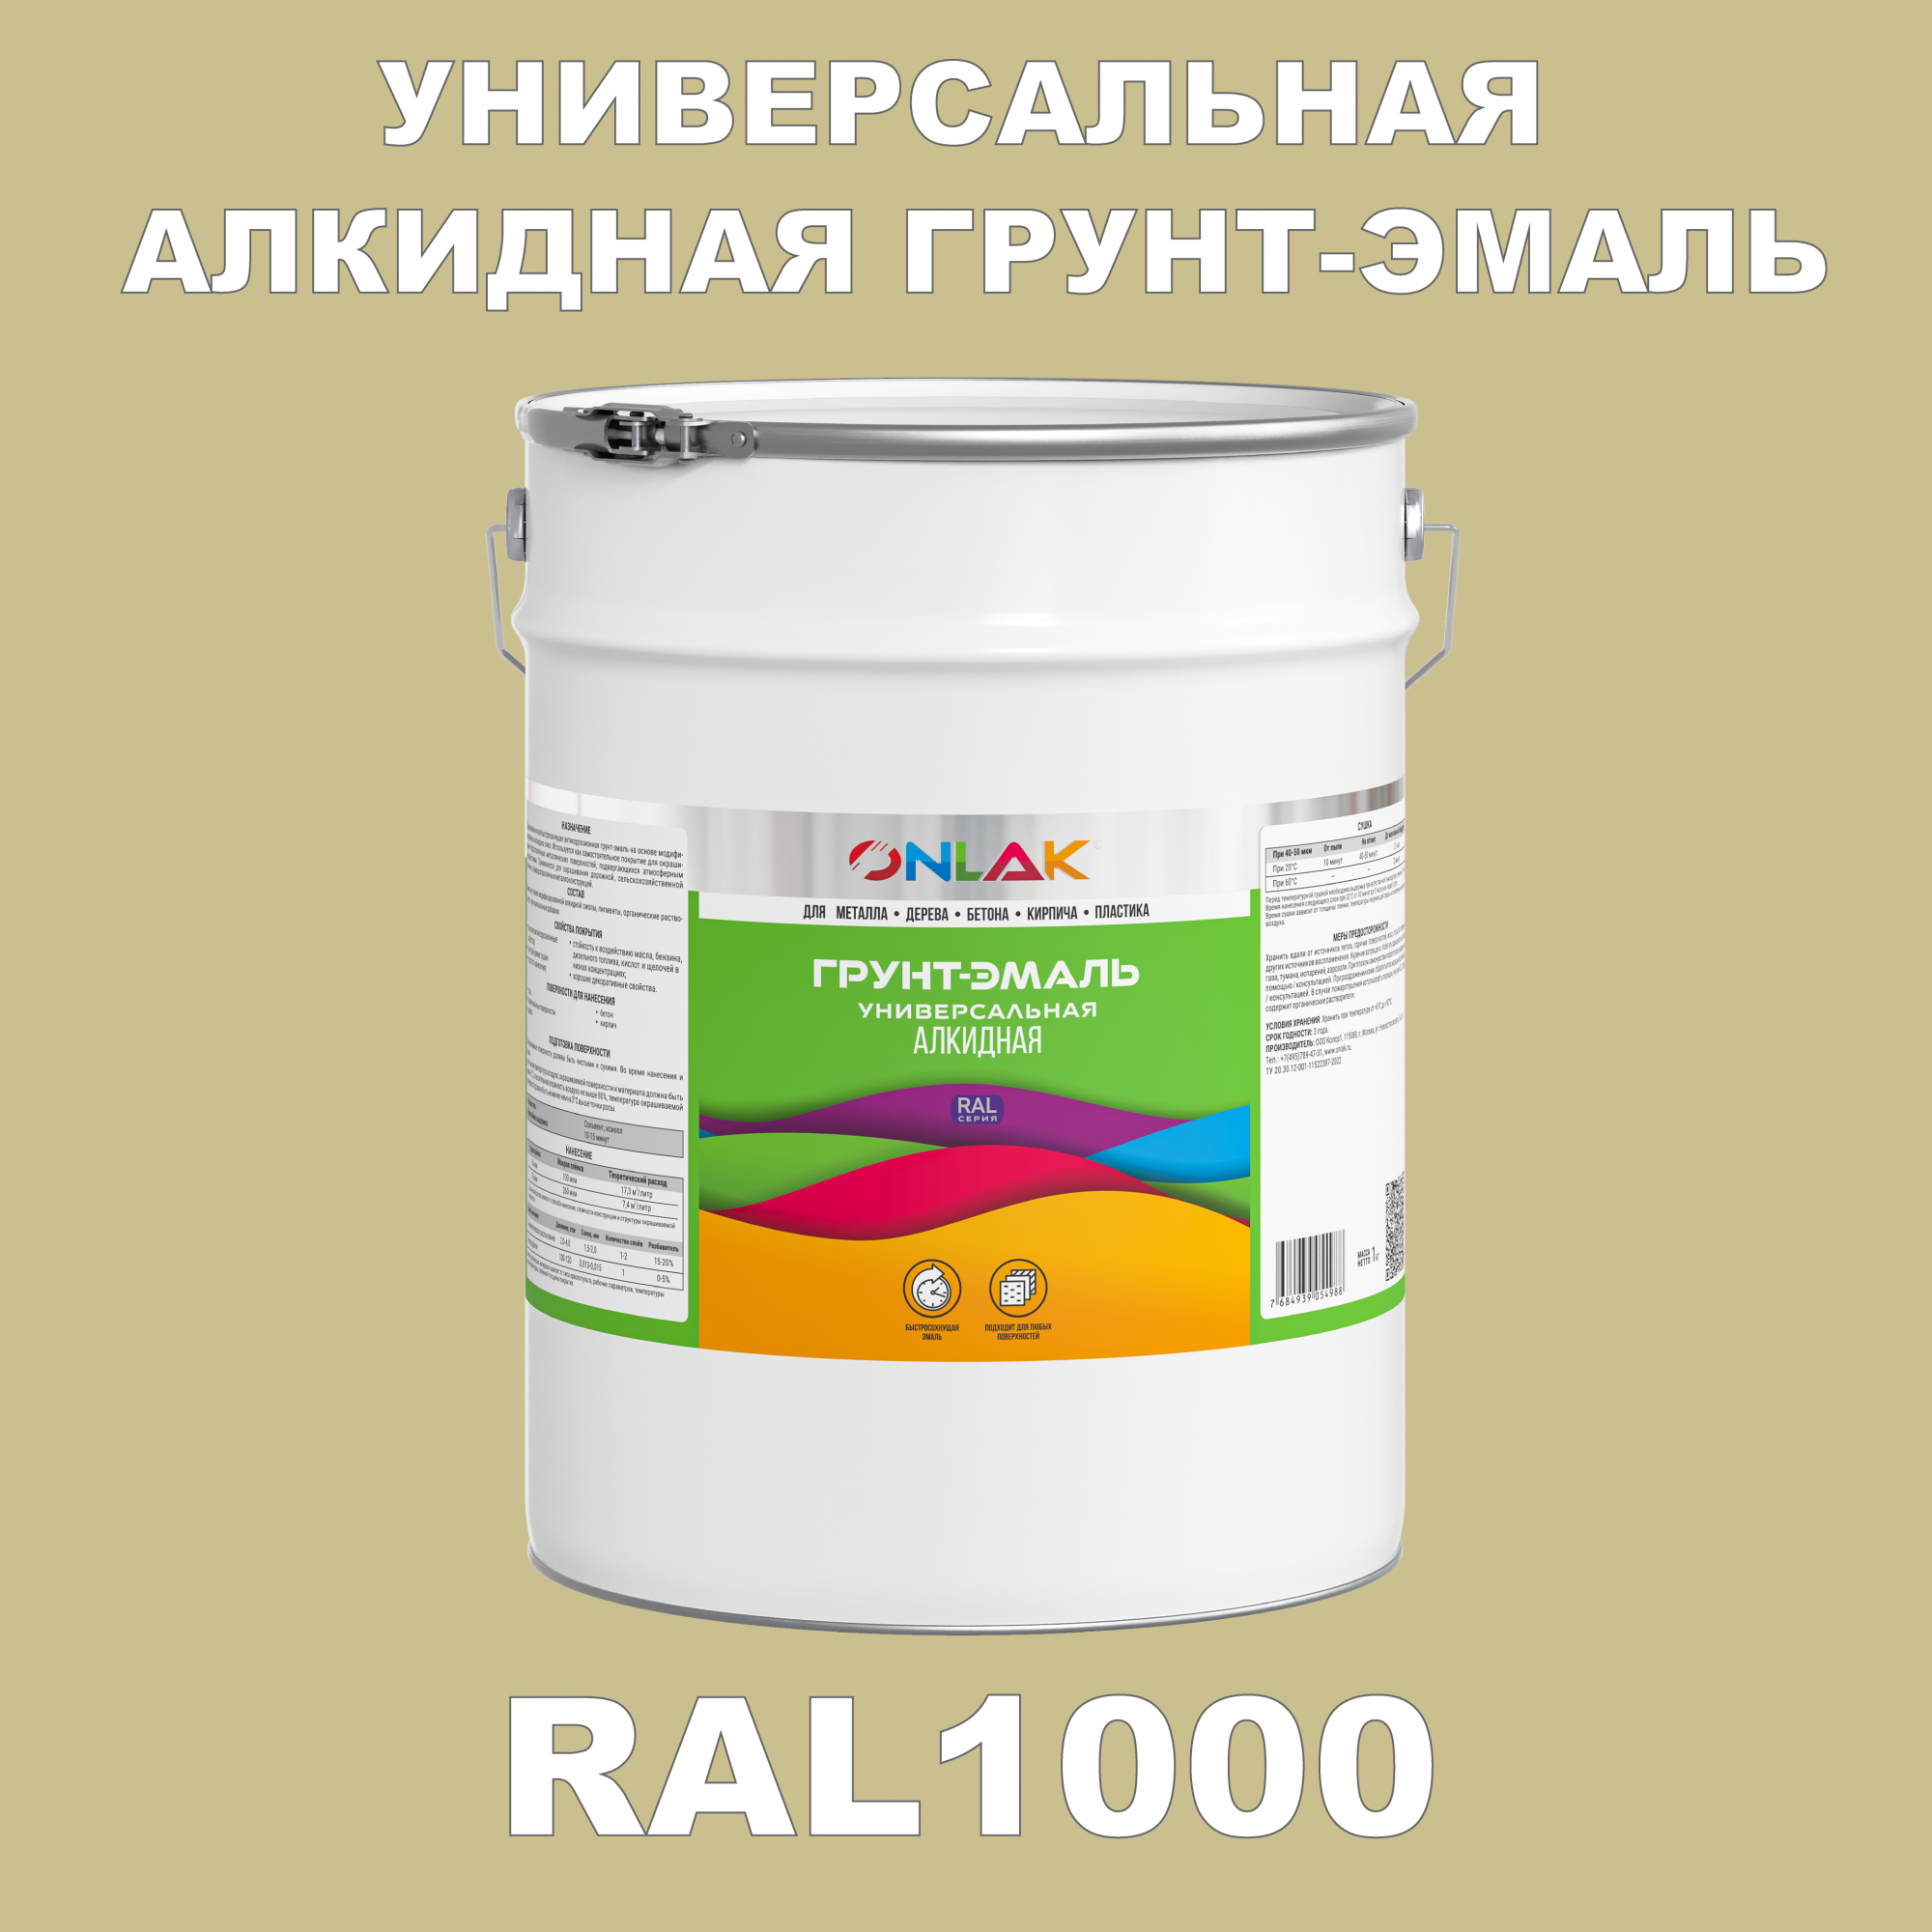 Грунт-эмаль ONLAK 1К RAL1000 антикоррозионная алкидная по металлу по ржавчине 20 кг грунт эмаль yollo по ржавчине алкидная зеленая 0 9 кг